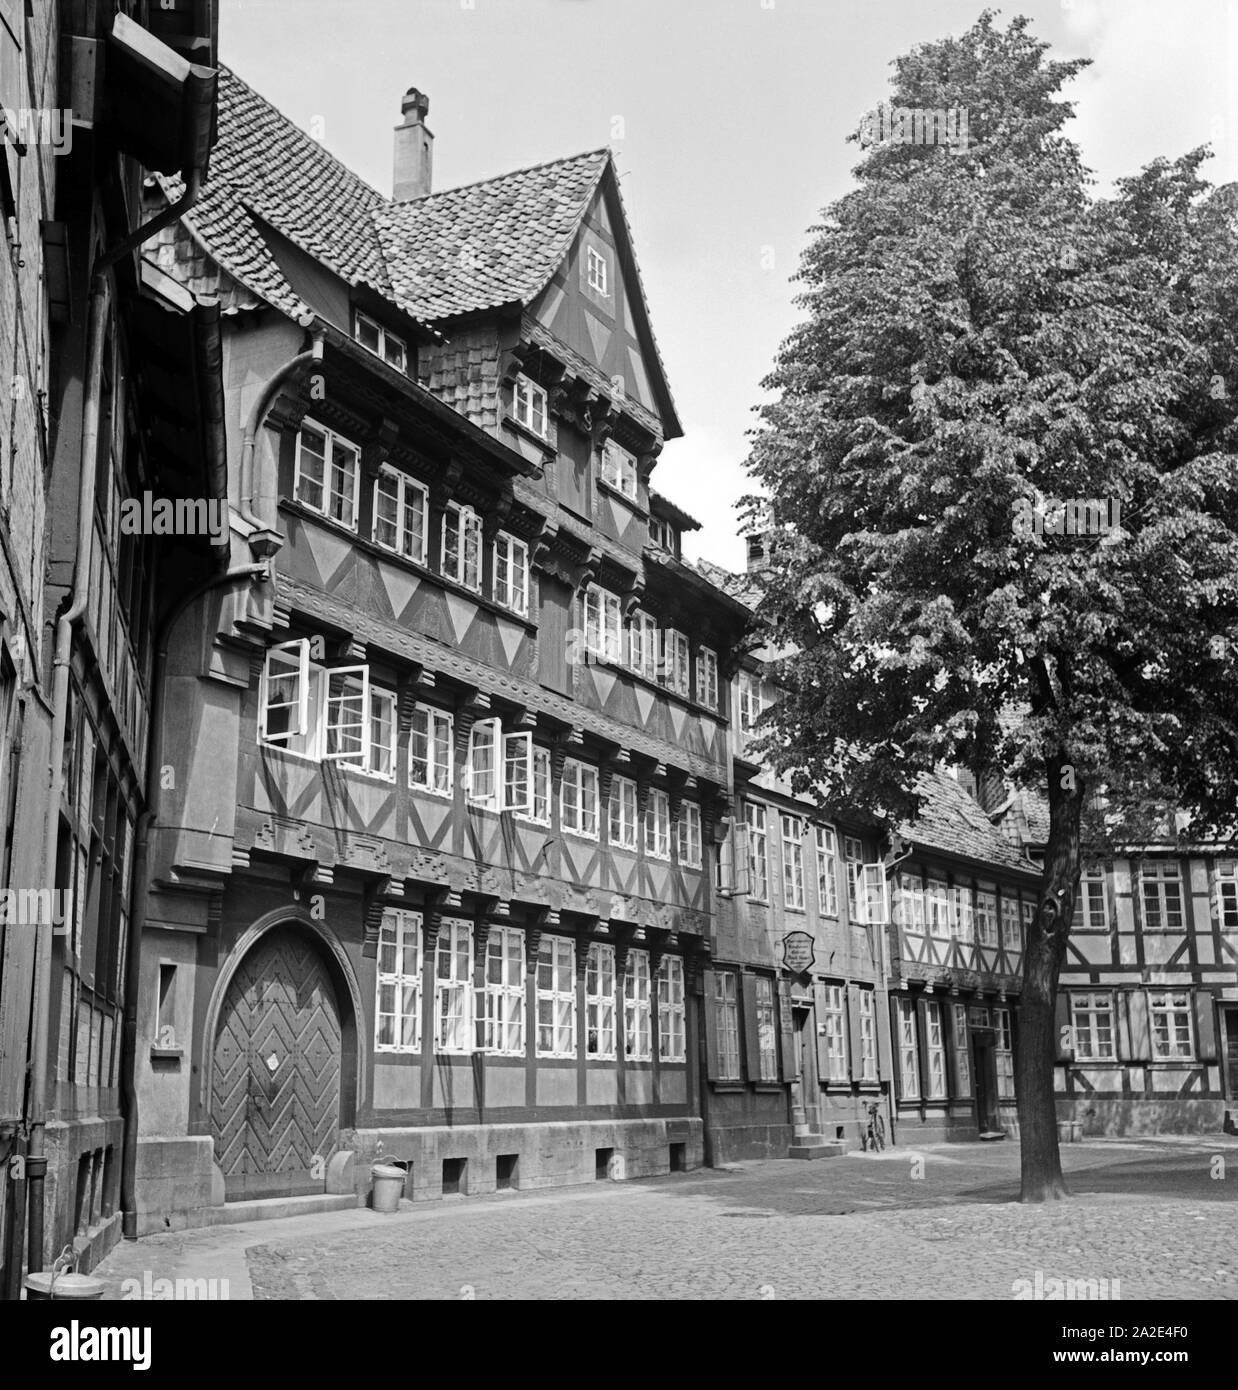 Stattliches Fachwerkhaus in der Altstadt von Braunschweig, Deutschland 1930er Jahre. Grande casa con travi di legno nella parte vecchia della città di Braunschweig, Germania 1930s. Foto Stock